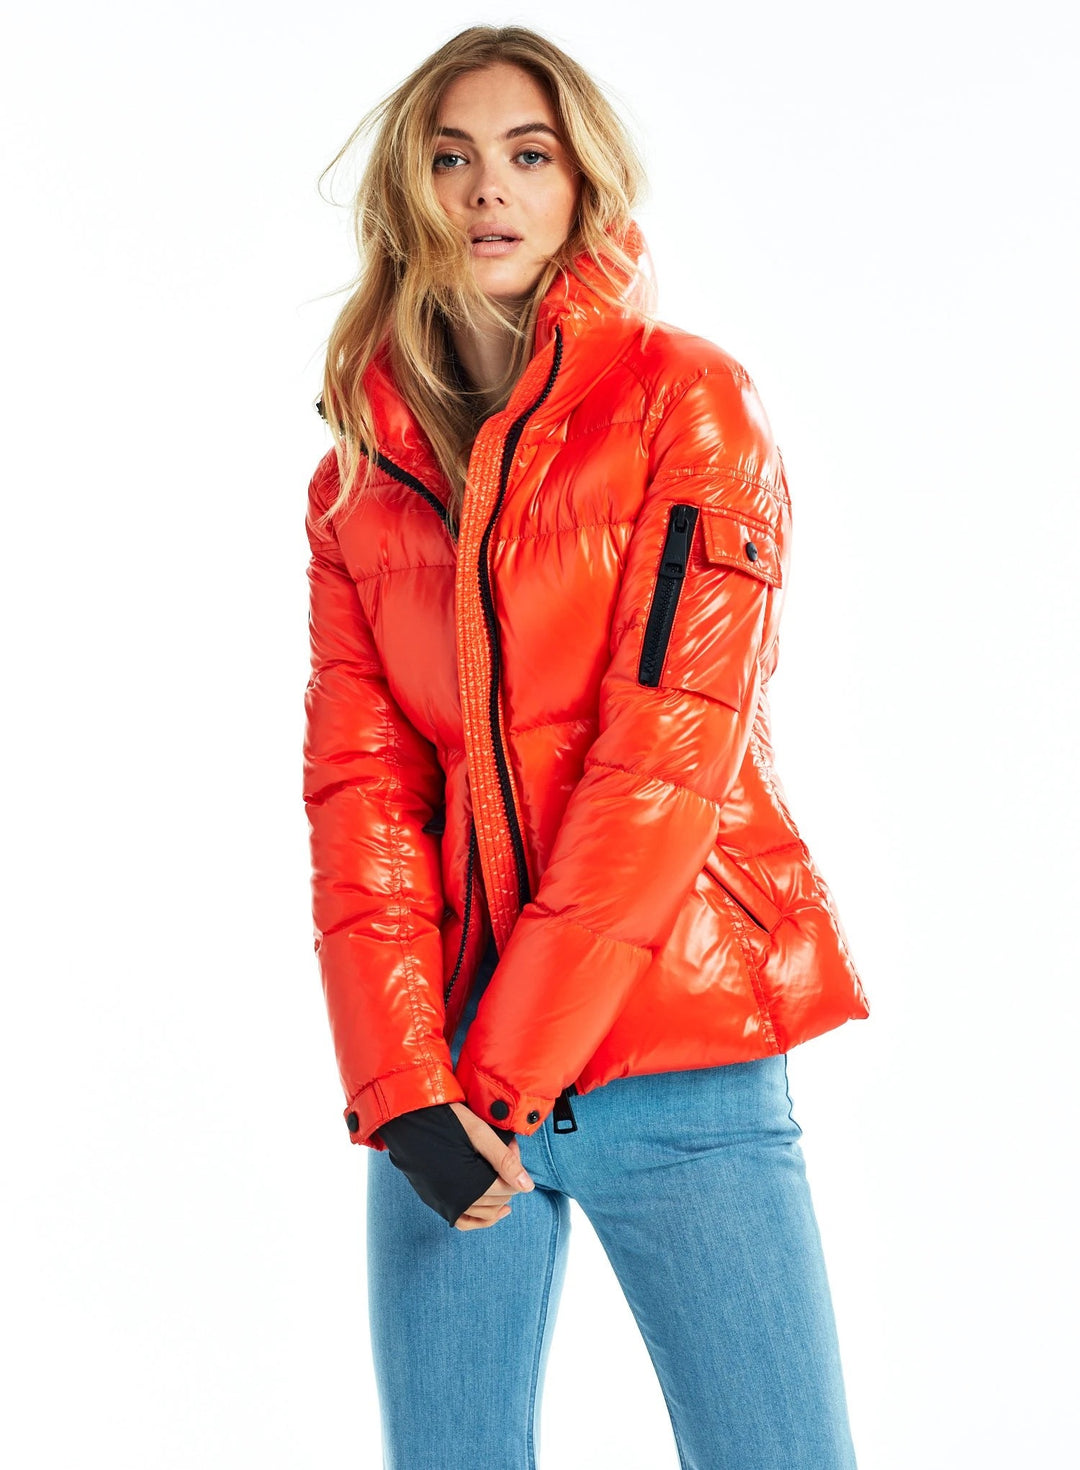 SAM - Freestyle Jacket in Tangerine – Blond Genius